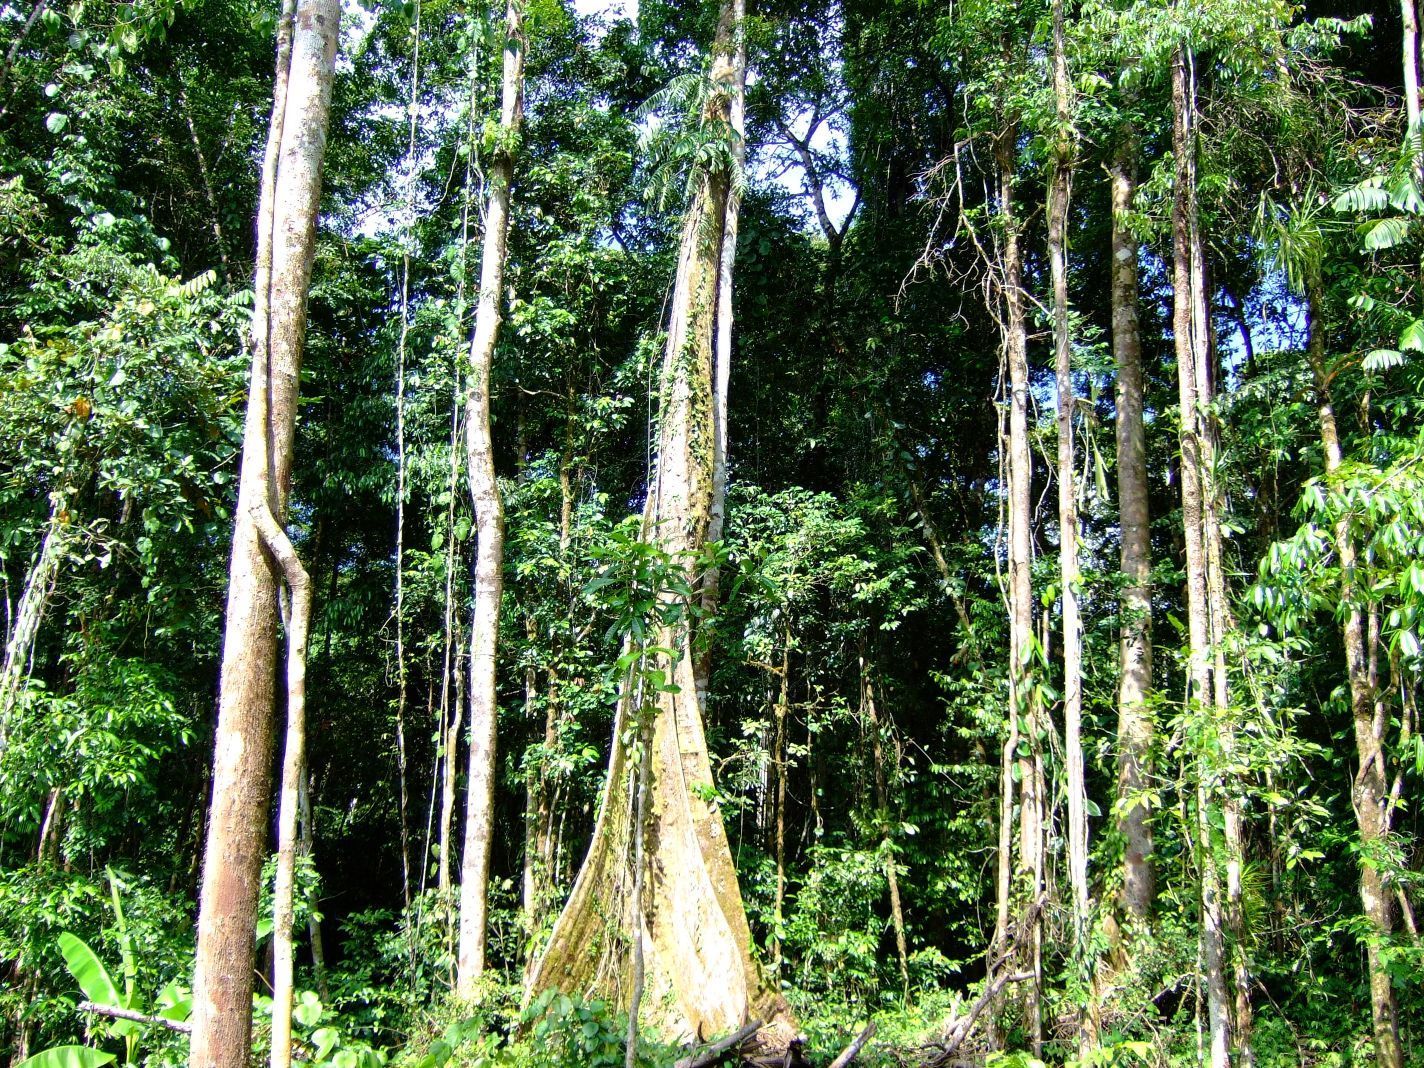 Petr Klimeš, V lesech jižní Moravy je víc housenek než v tropech. Čeští vědci srovnávali počet hmyzu napříč třemi kontinenty